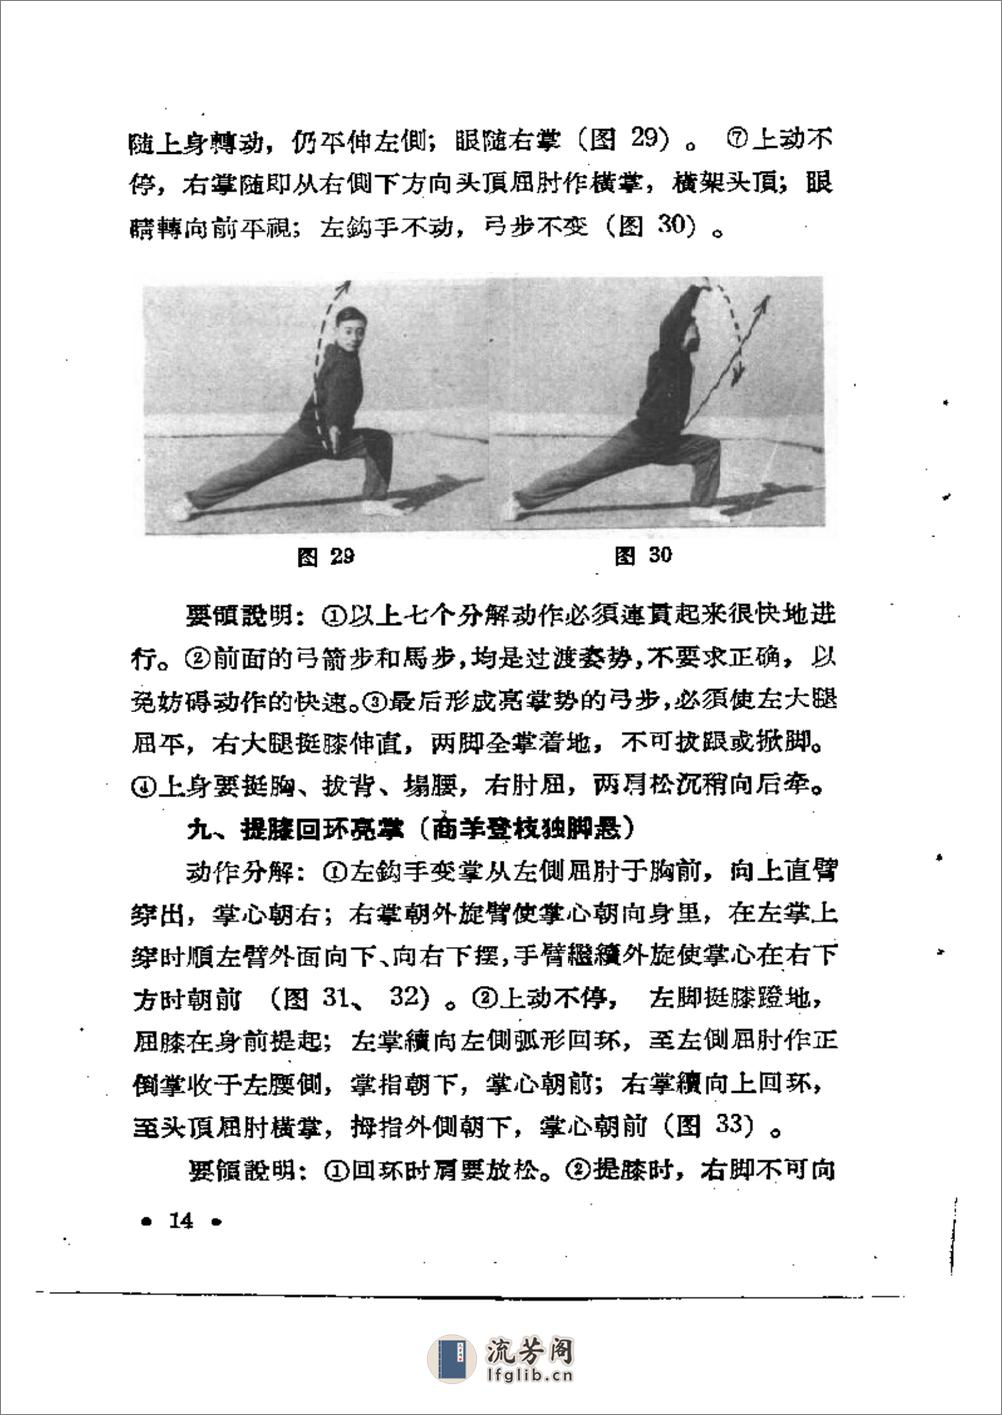 《二路华拳》蔡龙云 - 第20页预览图